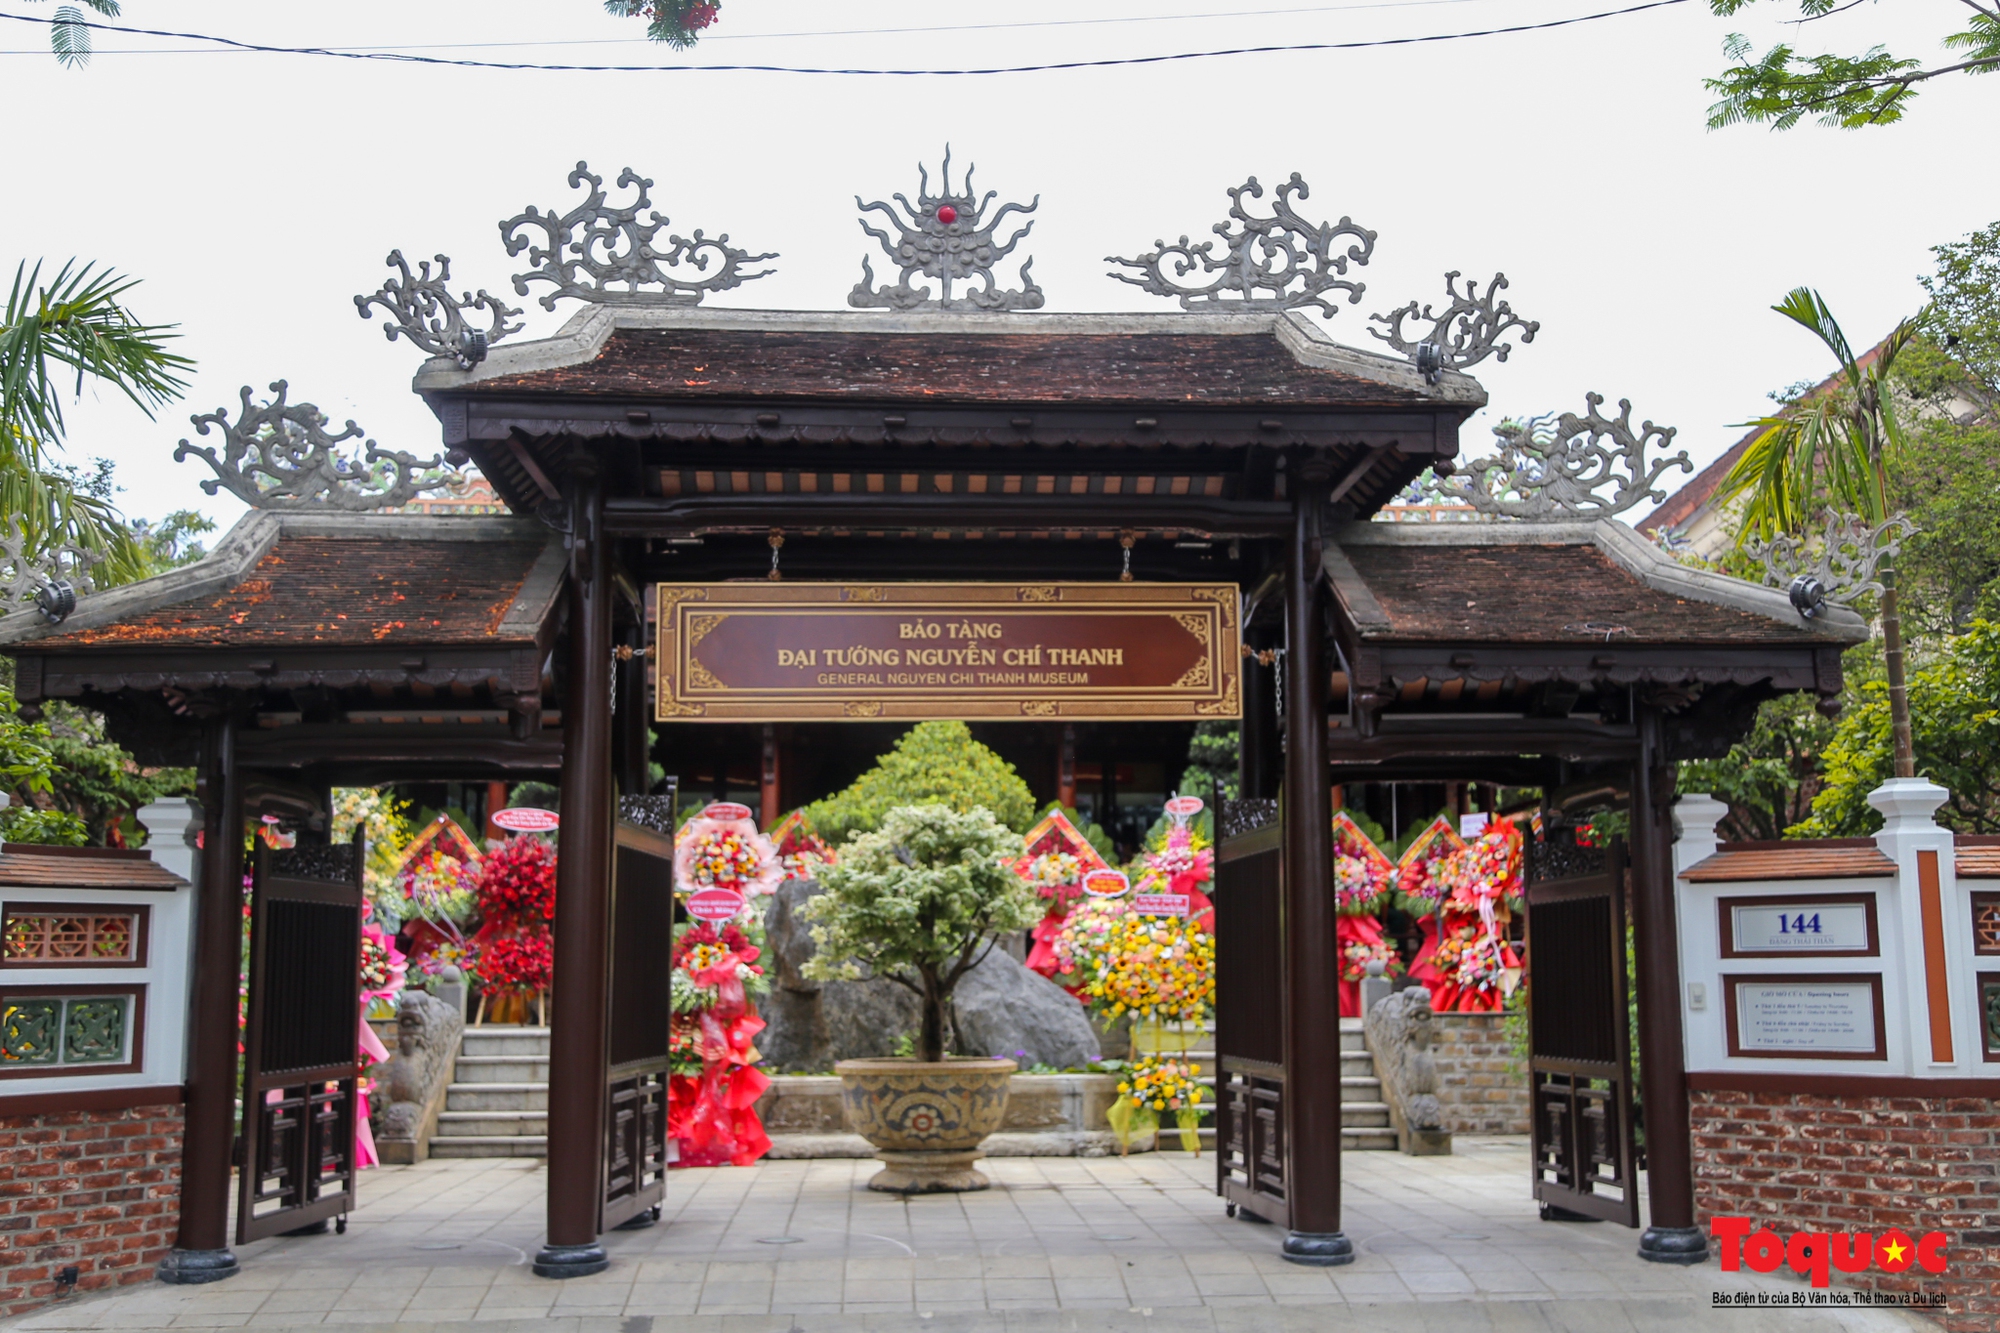 Bảo tàng Đại tướng Nguyễn Chí Thanh chính thức mở cửa đón khách tham quan - Ảnh 1.